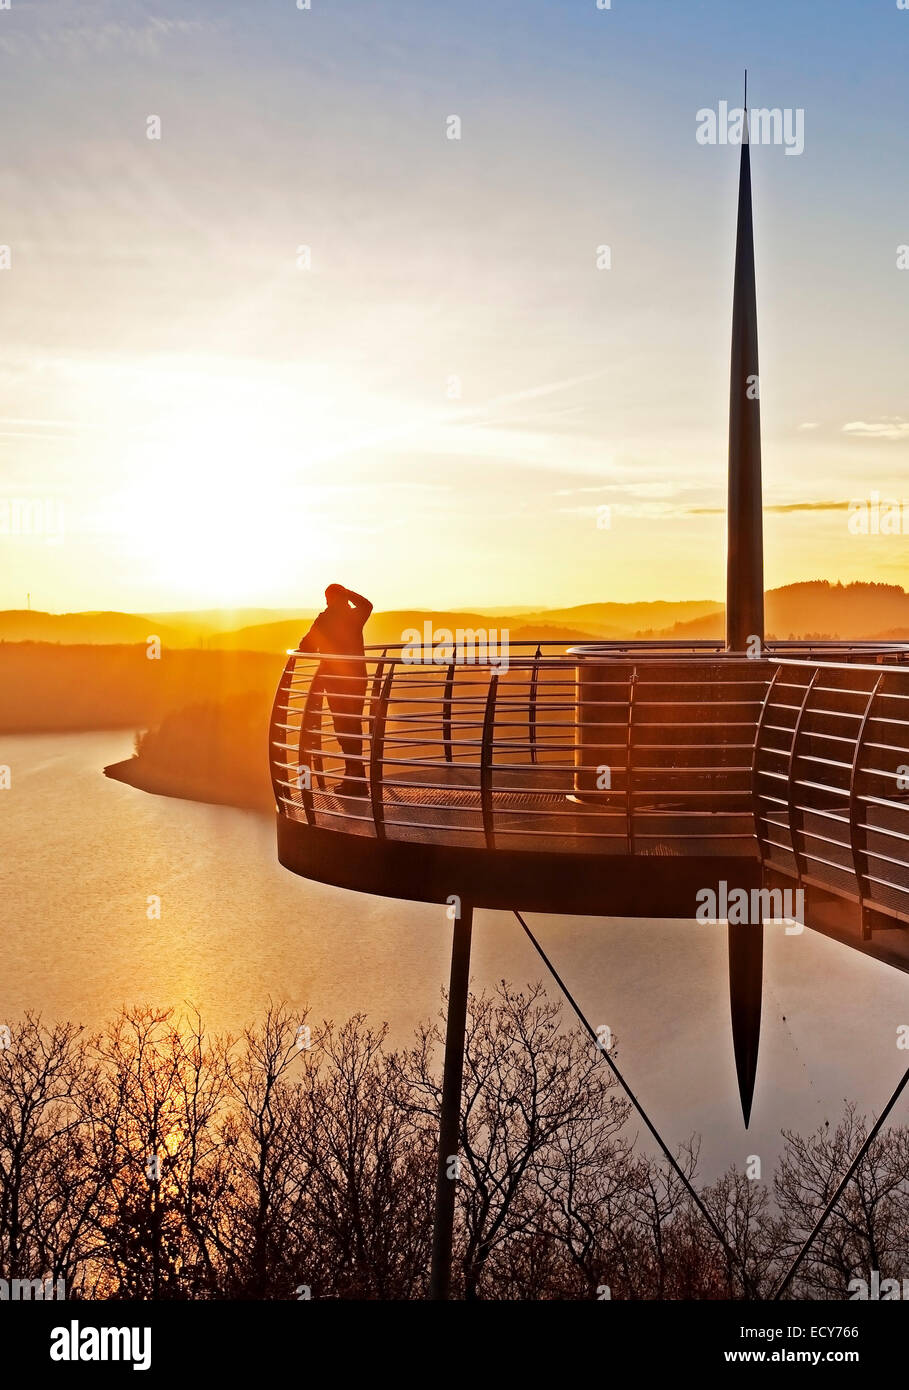 Aussichtsplattform Biggeblick mit einer Person am Sonnenuntergang, Biggesee Vorratsbehälter, Attendorn, Sauerland, Nordrhein-Westfalen, Deutschland Stockfoto